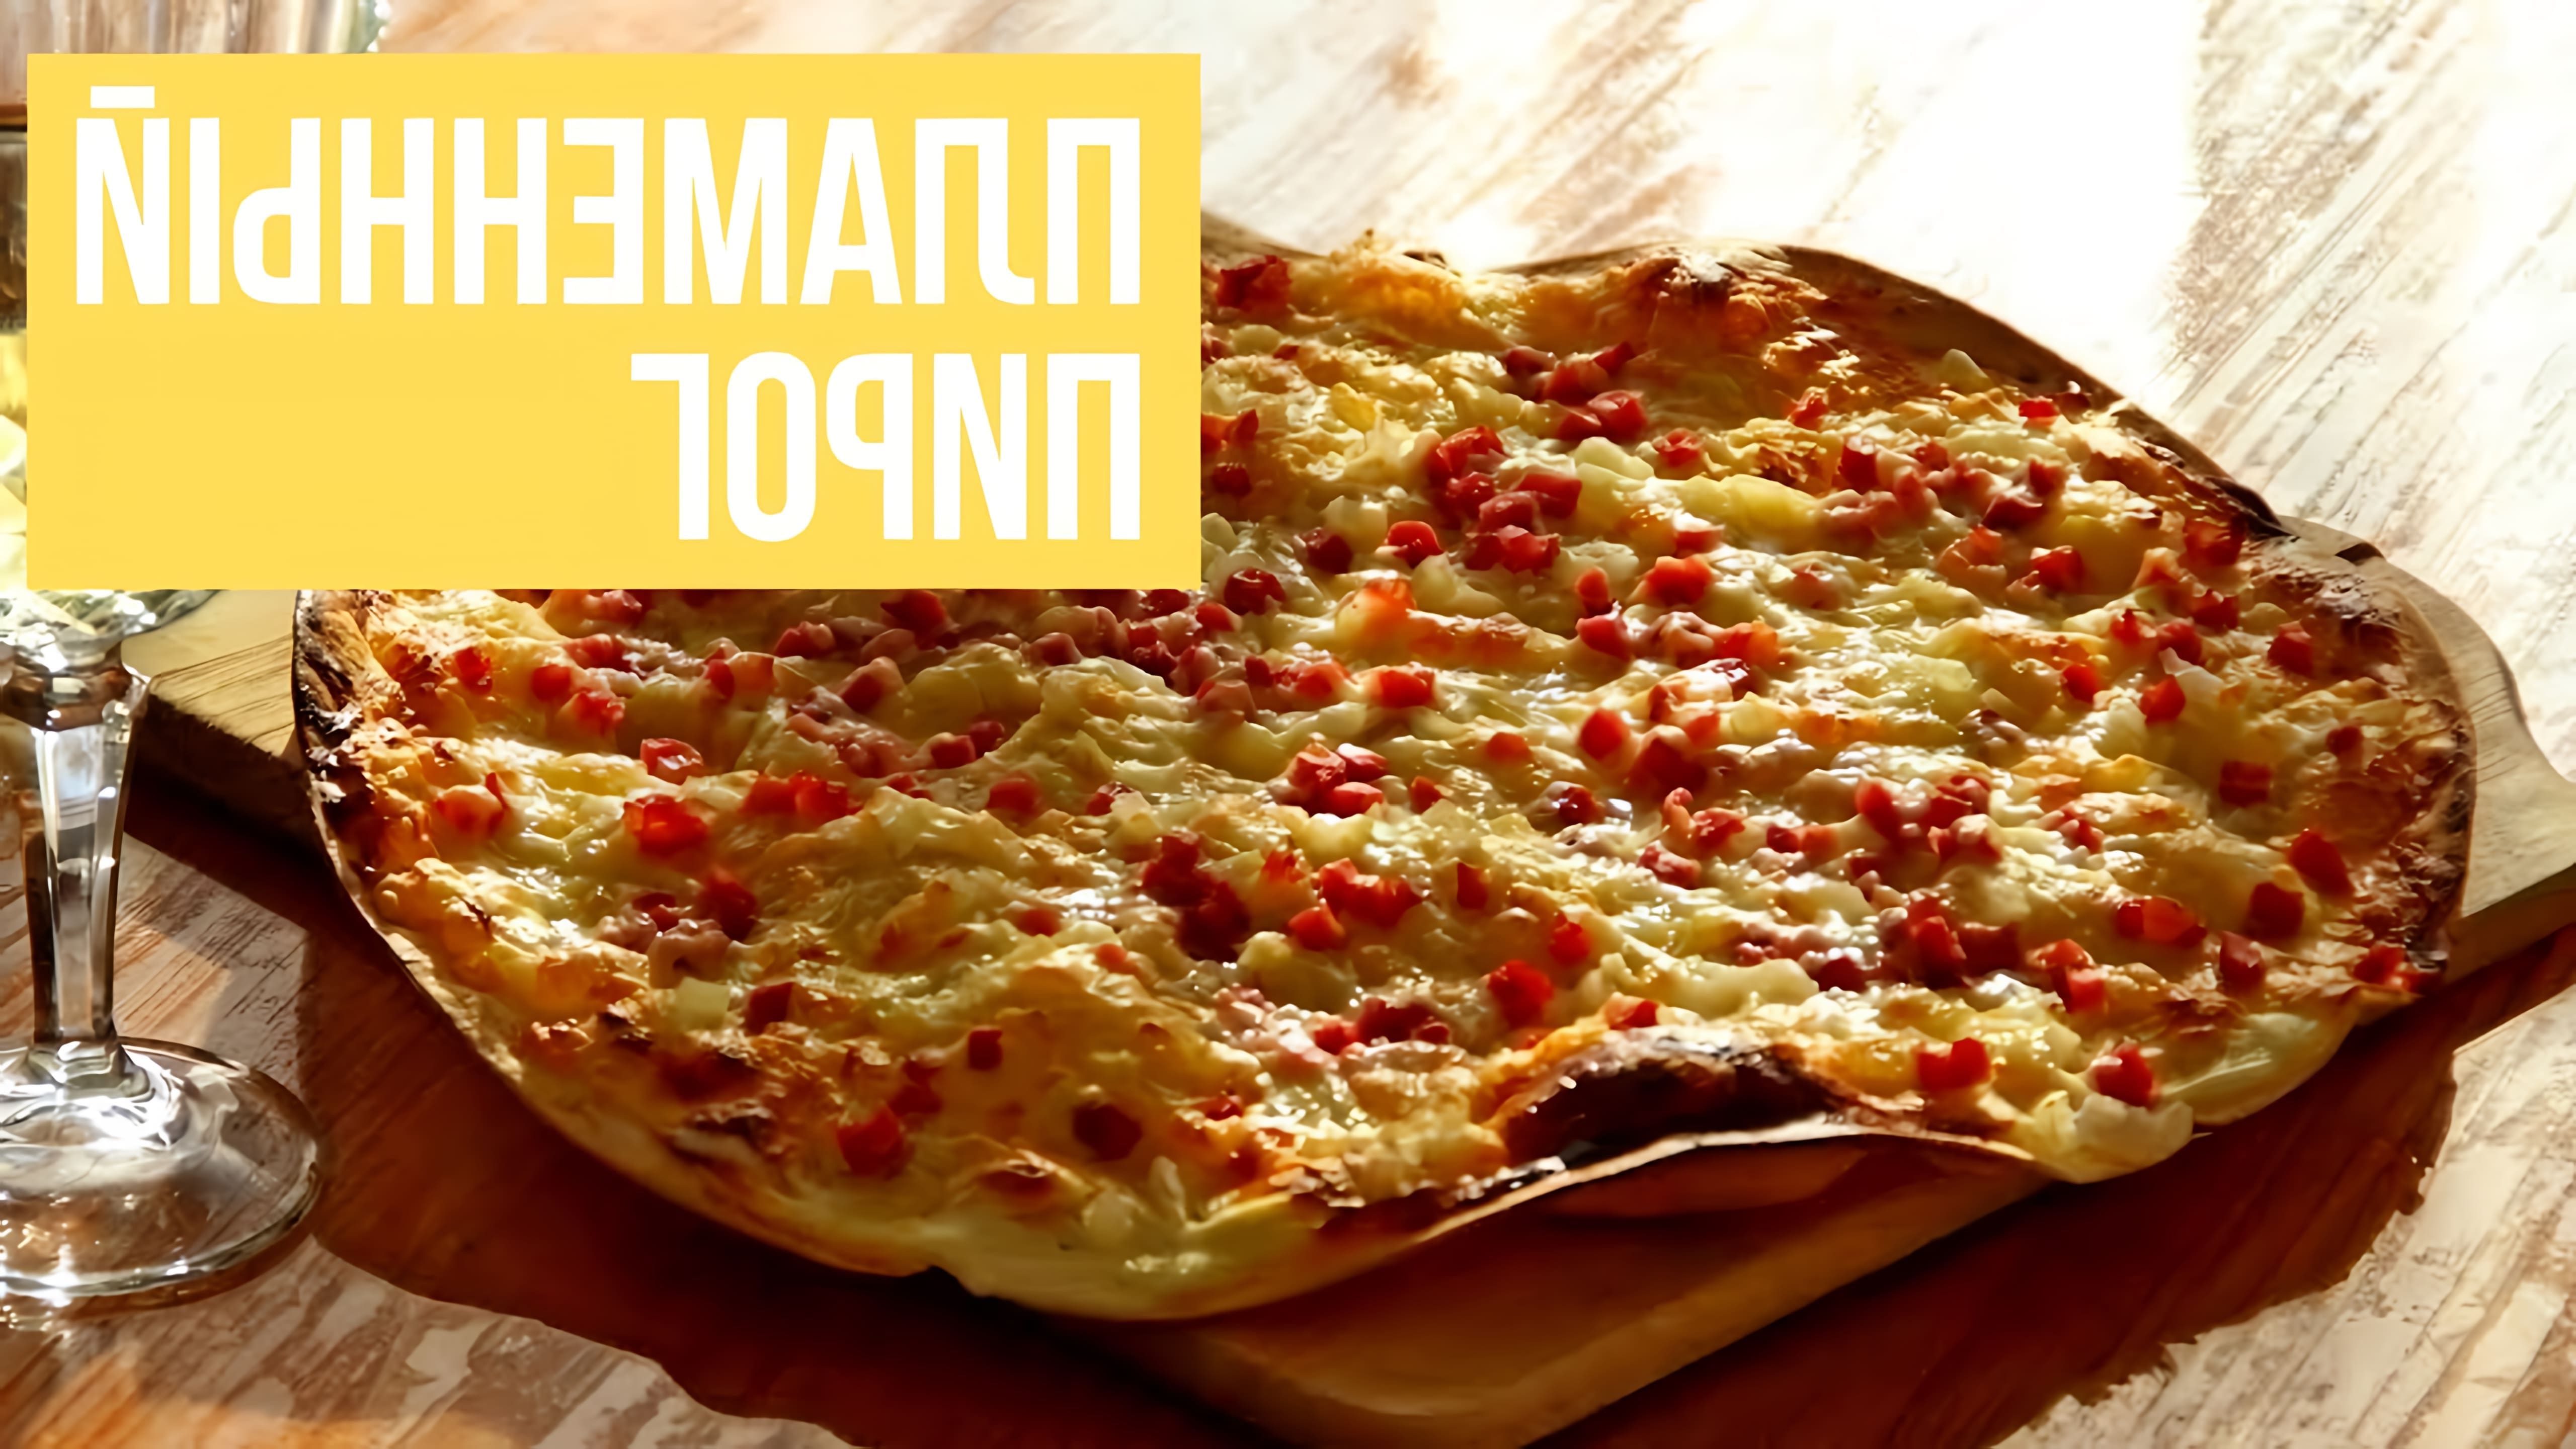 В этом видео рассказывается о рецепте приготовления фламмкухена, немецкой пиццы